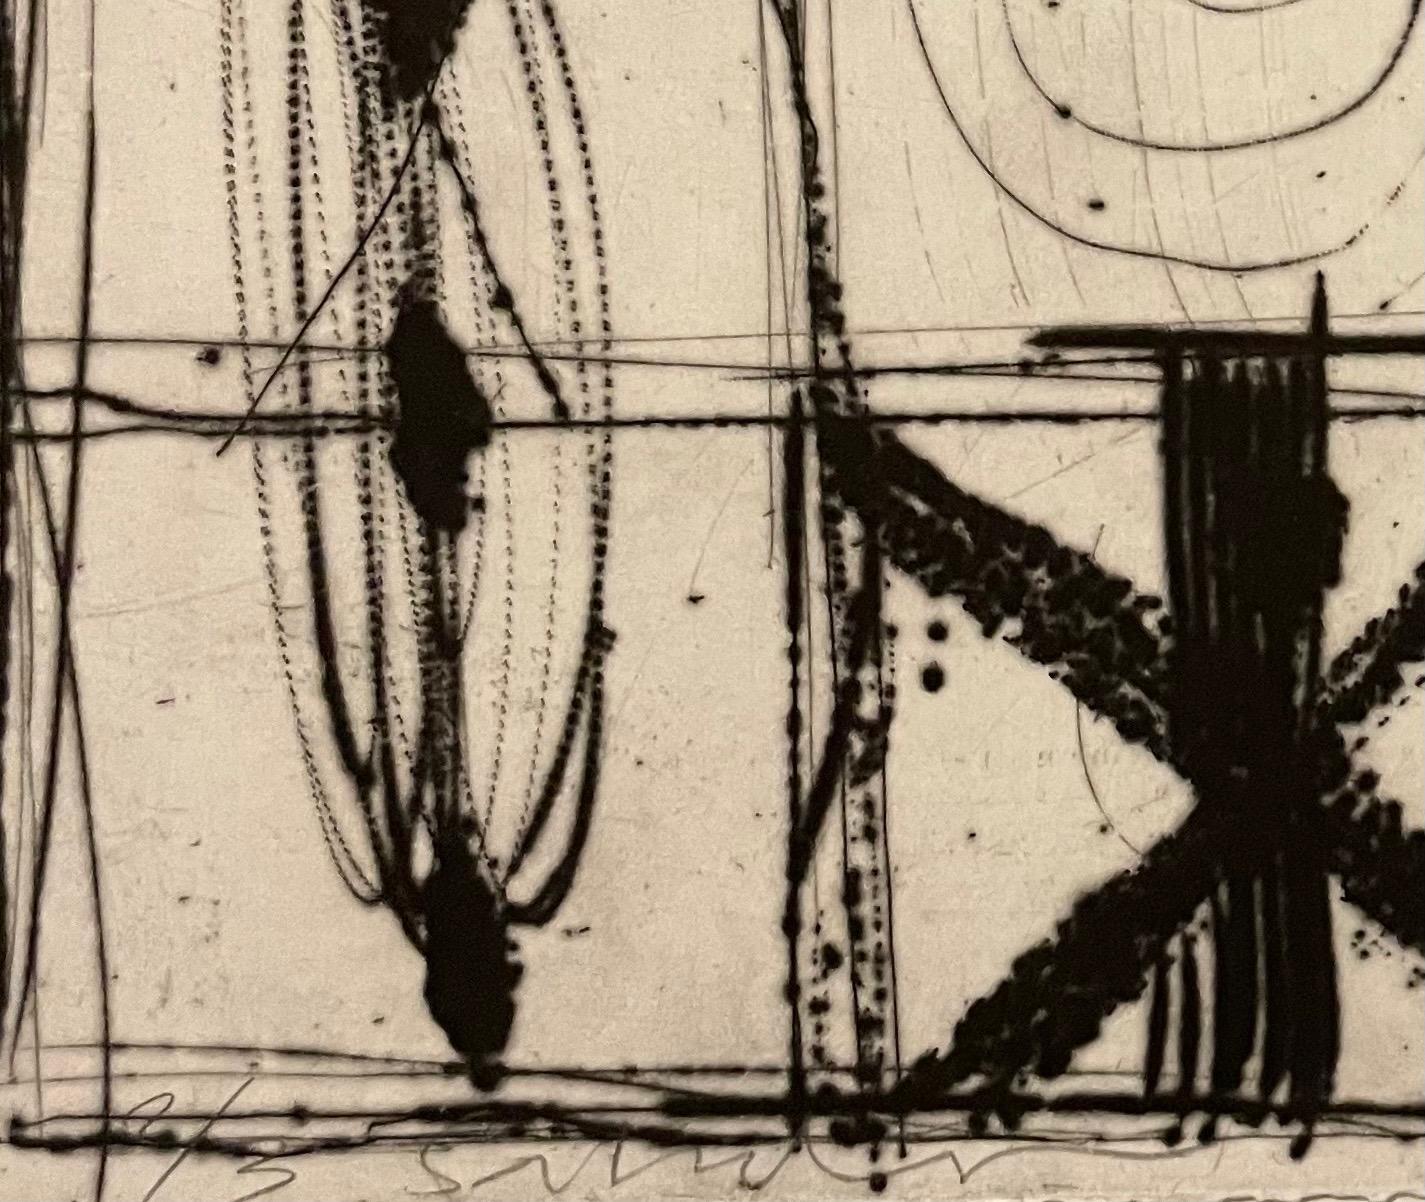 Moix, Santi (Spanisch, geb. 1960), Figurale Abstraktion, Hybriddruck mit Radierung und Aquatinta, 23,5 x 16,75 cm, mit Bleistift signiert und nummeriert 2/3.

Santi Moix (Barcelona, 1960) lebt seit 1986 in New York. Als vielseitiger Künstler fertigt